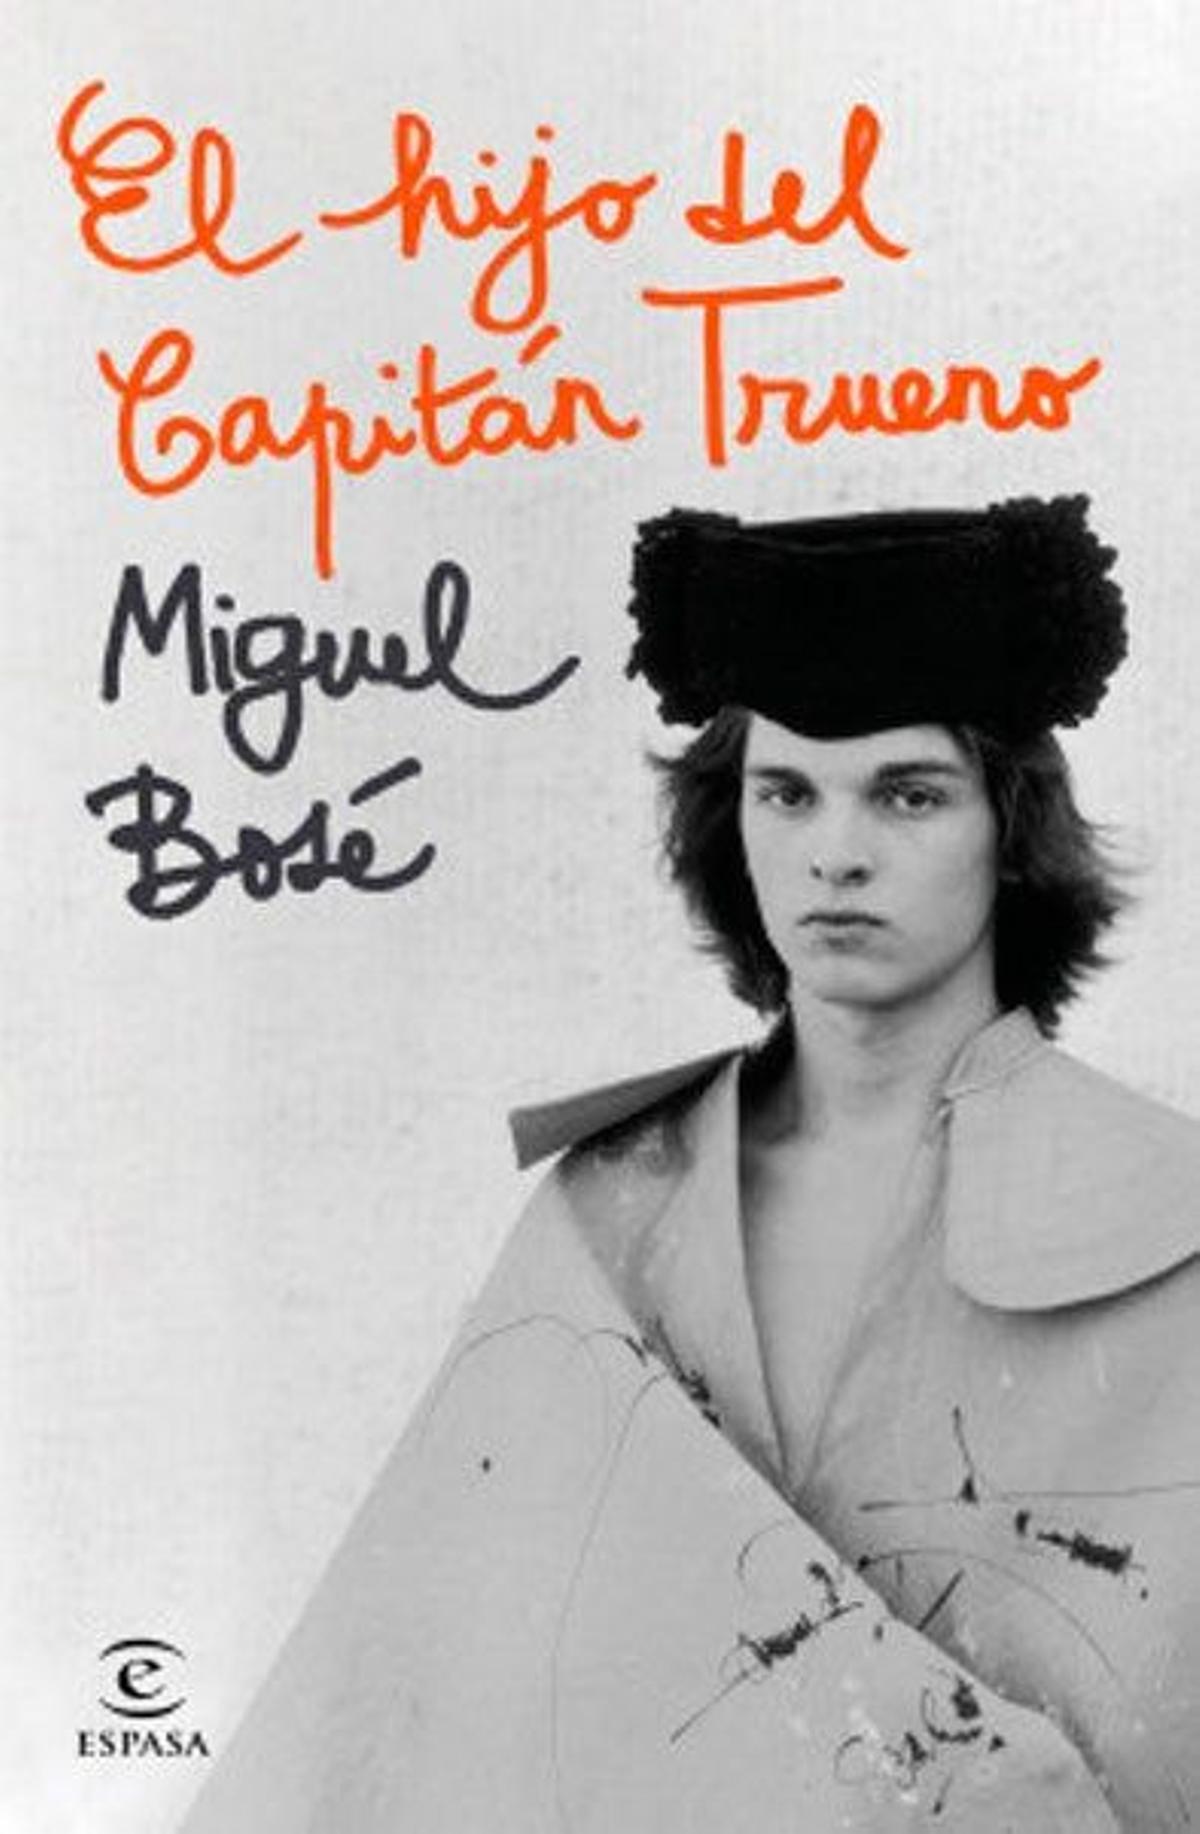 Portada del libro 'El hijo del capitán trueno', la autobiografía de Miguel Bosé